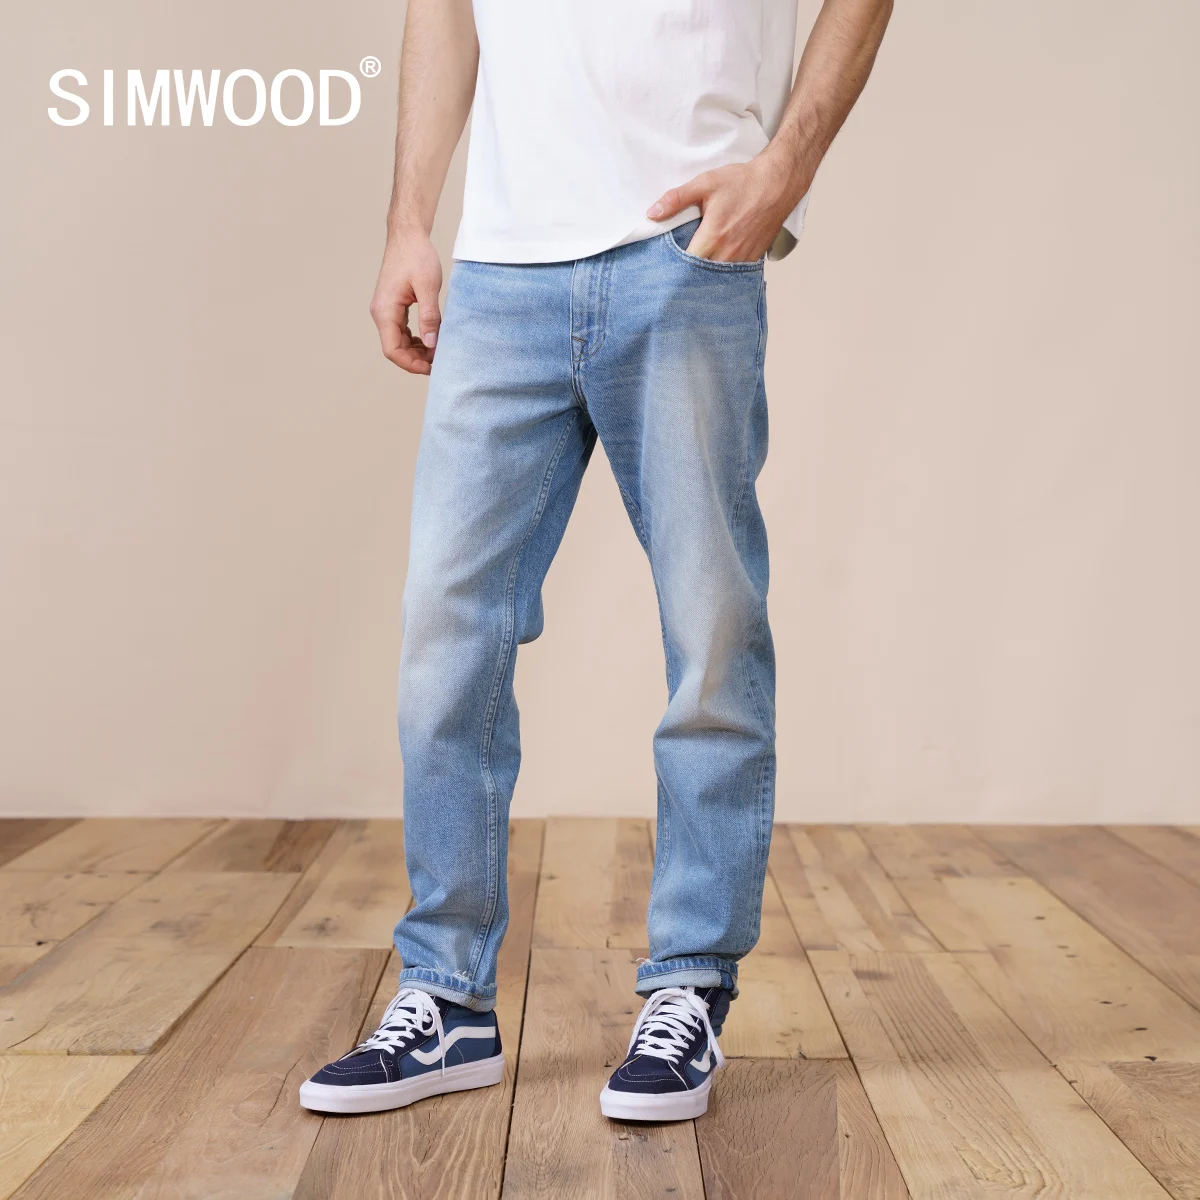 سيموود 2022 ربيع جديد منتظم مستقيم الجينز الرجال موضة ممزق سراويل جينز عادية حجم كبير ماركة الملابس SK130189